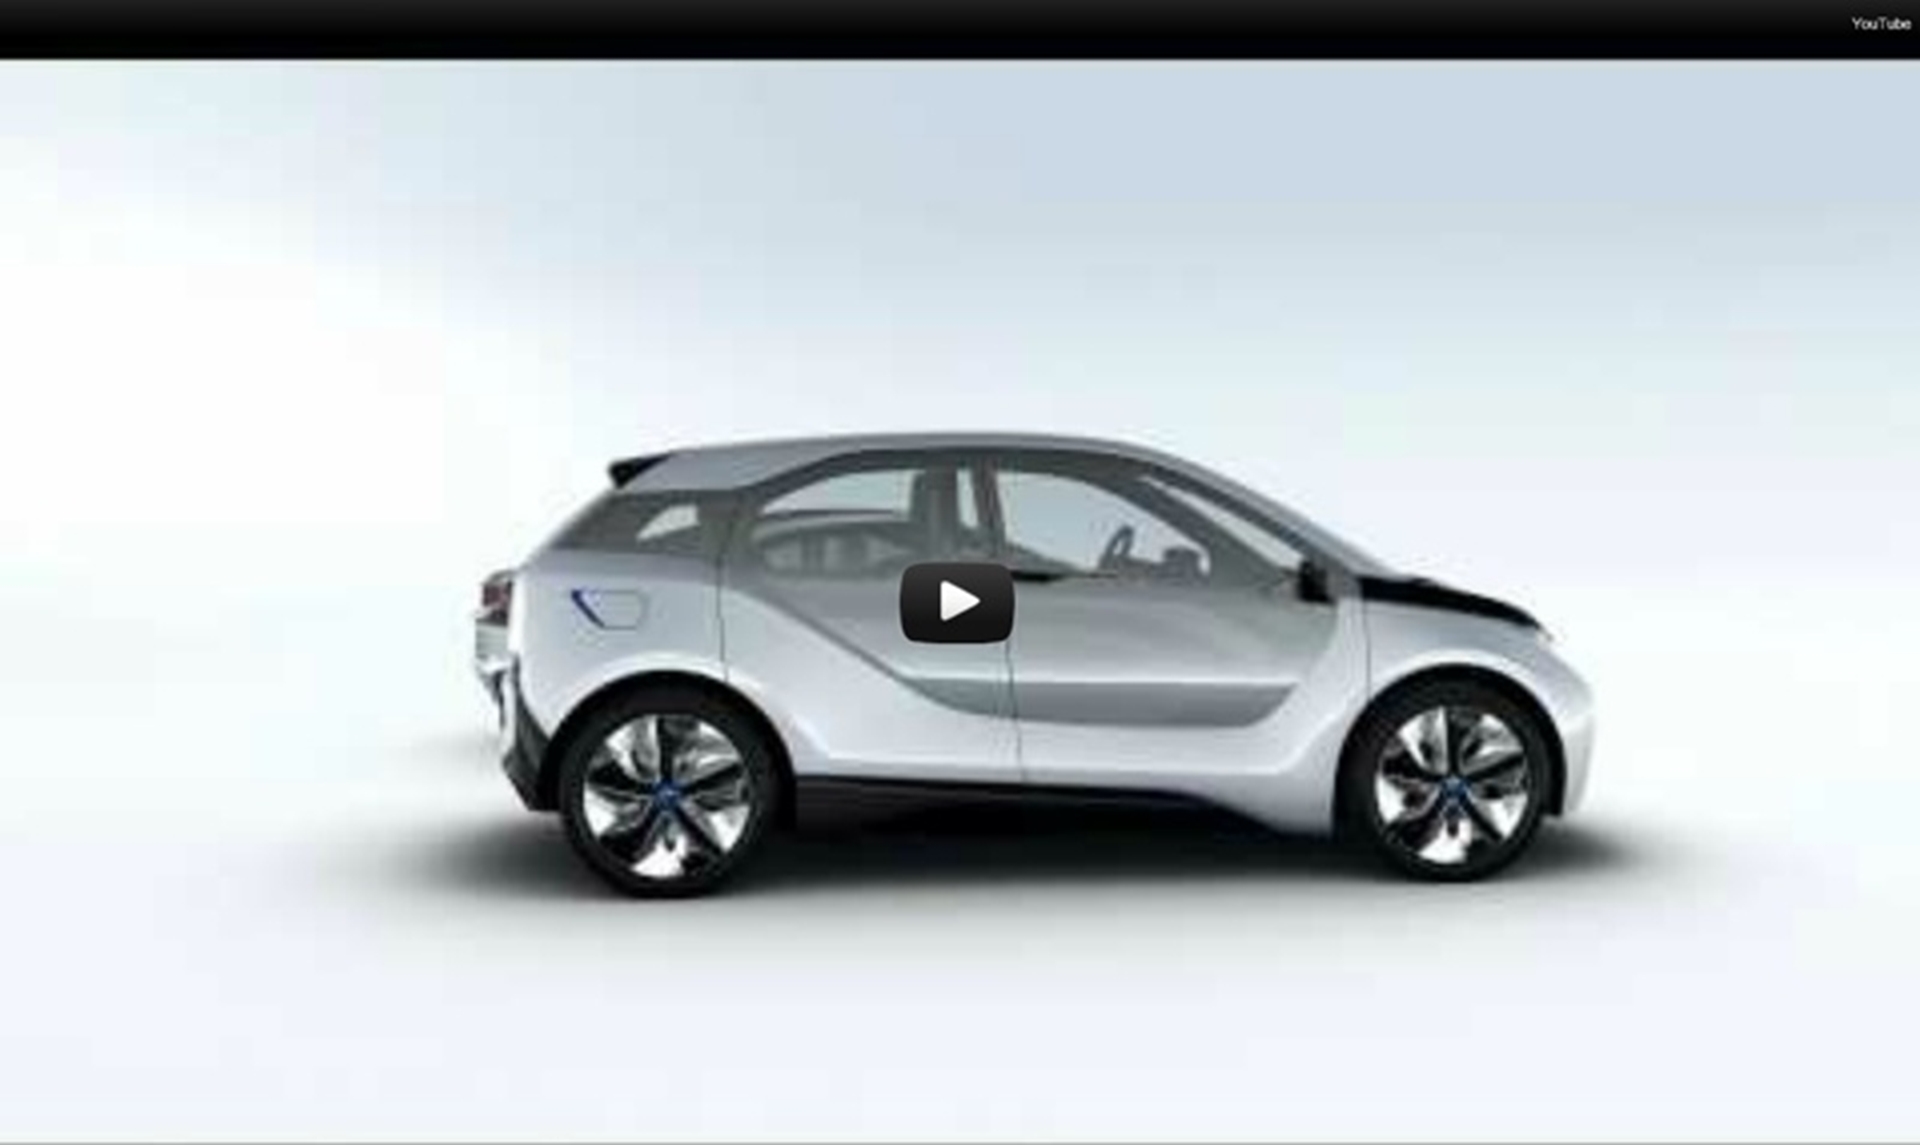 BMW 3D Video Concept Cars